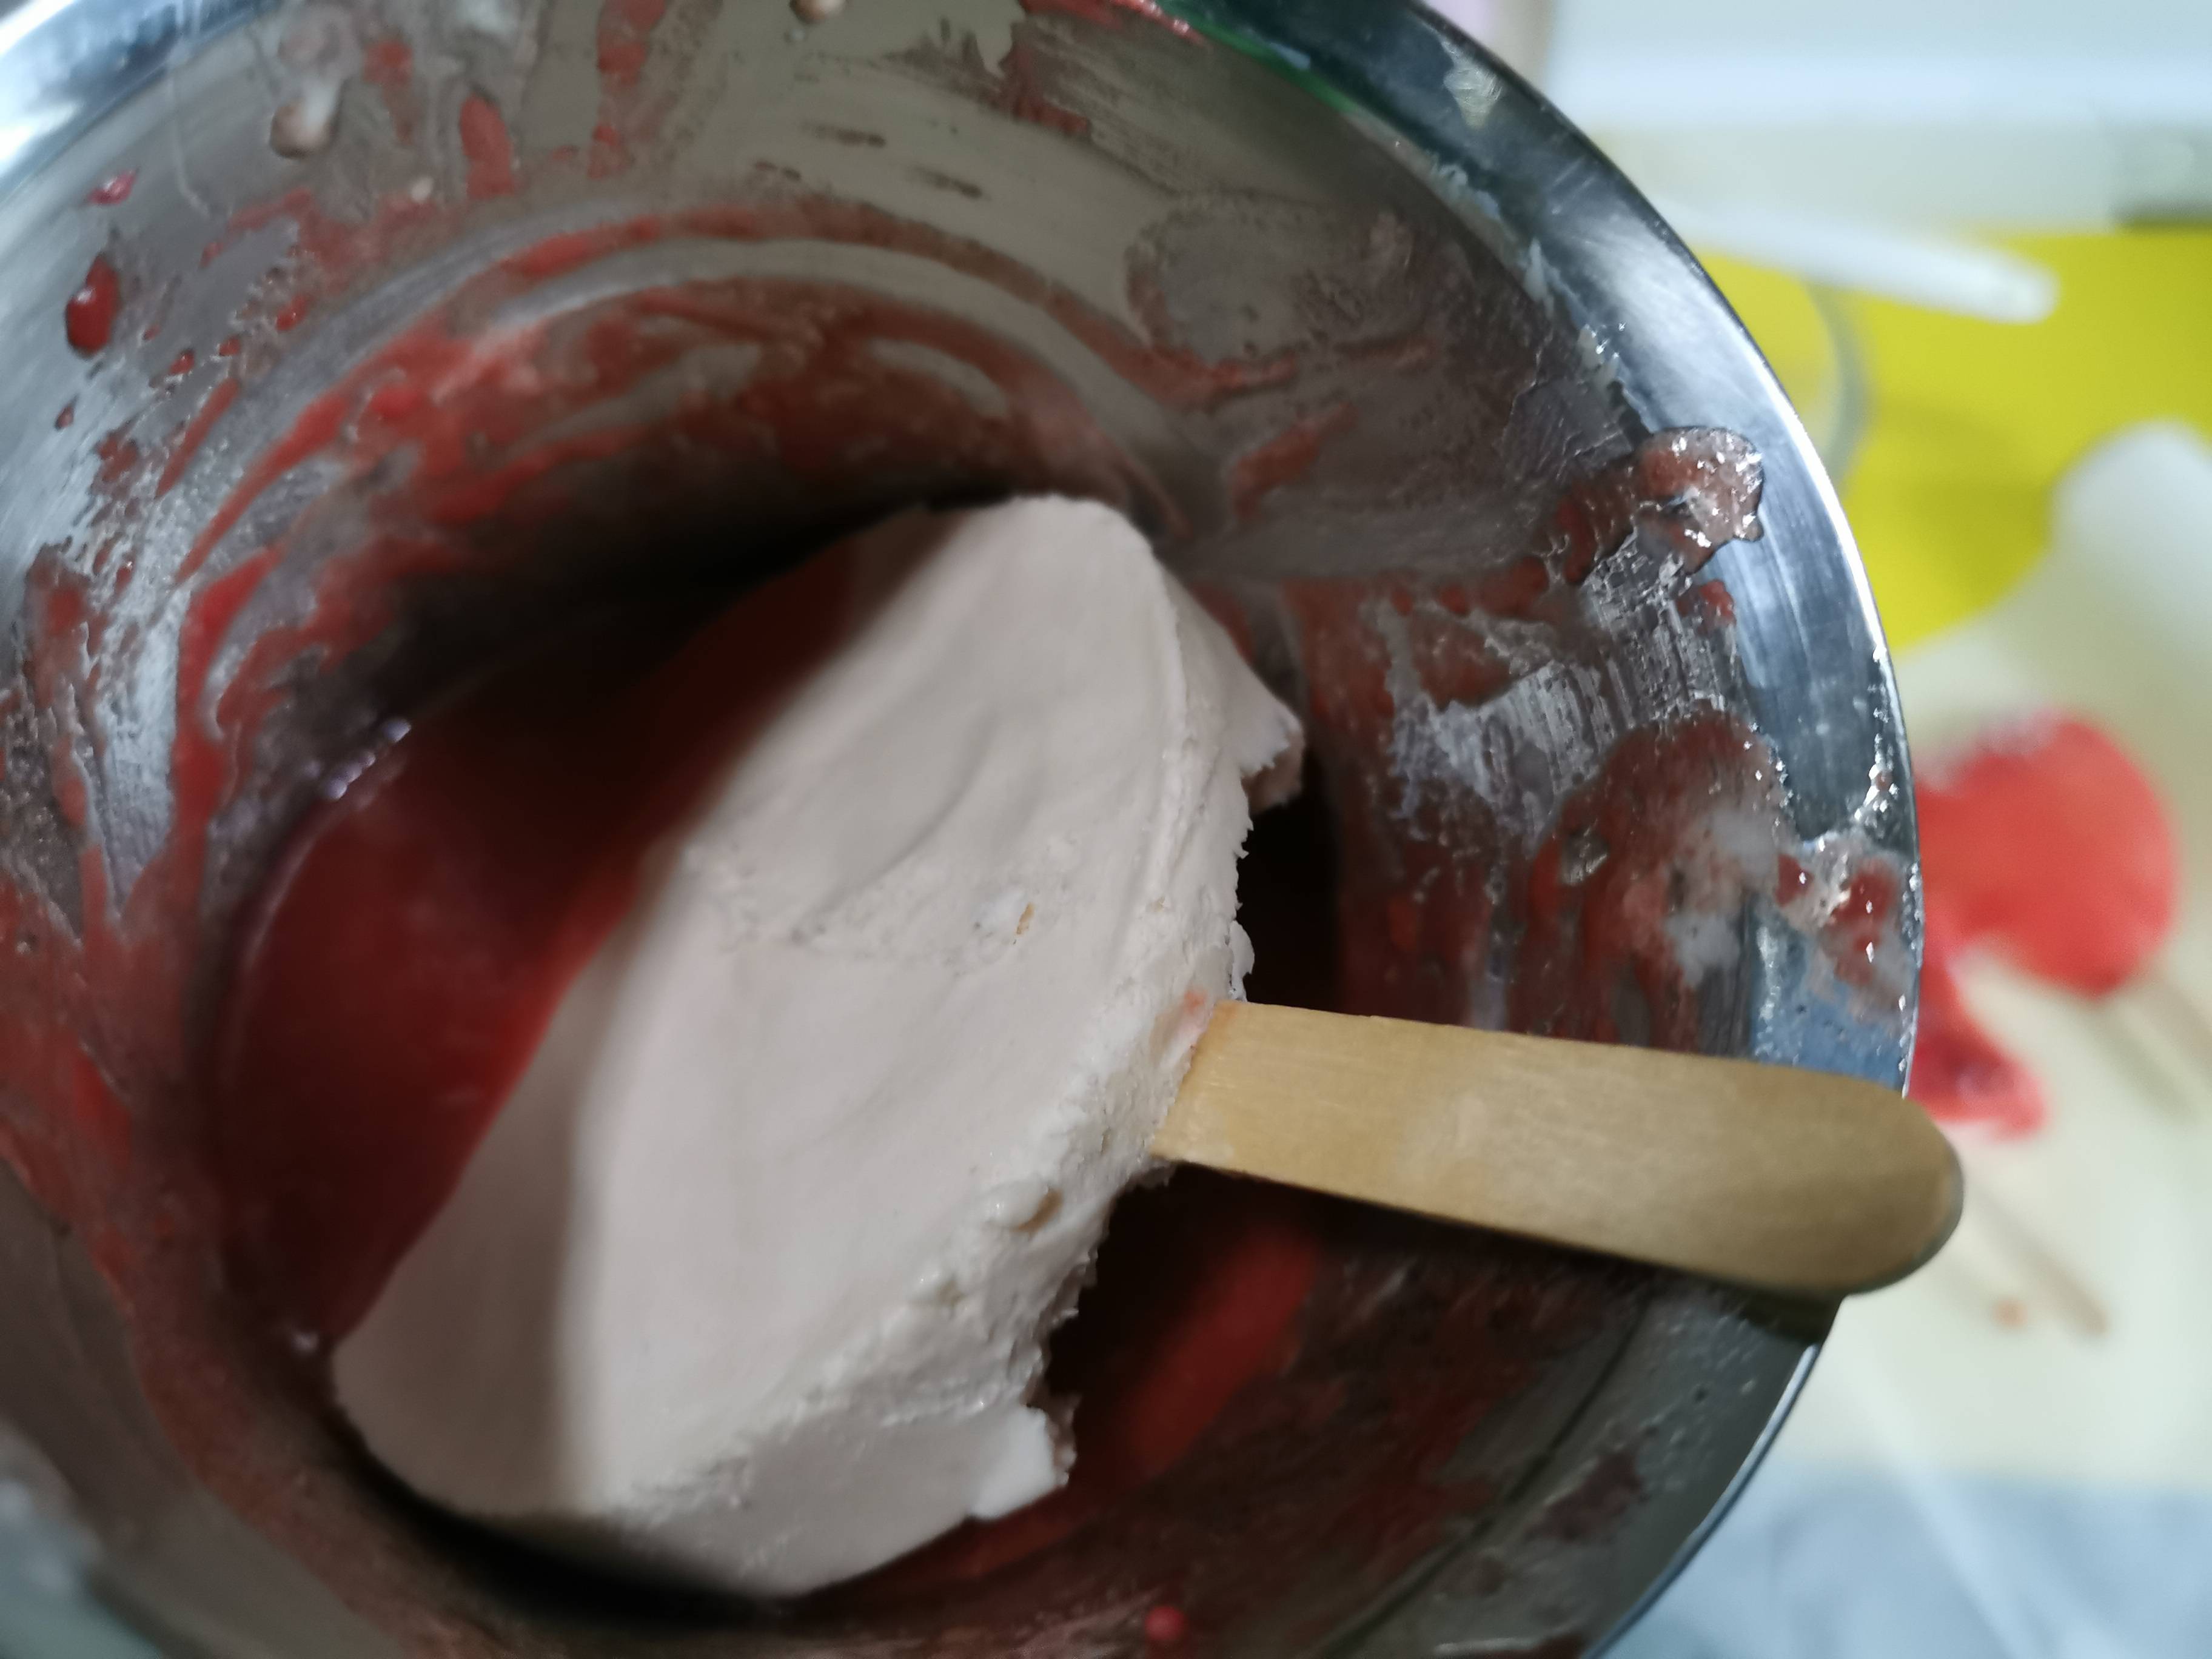 Strawberry Ice Cream recipe